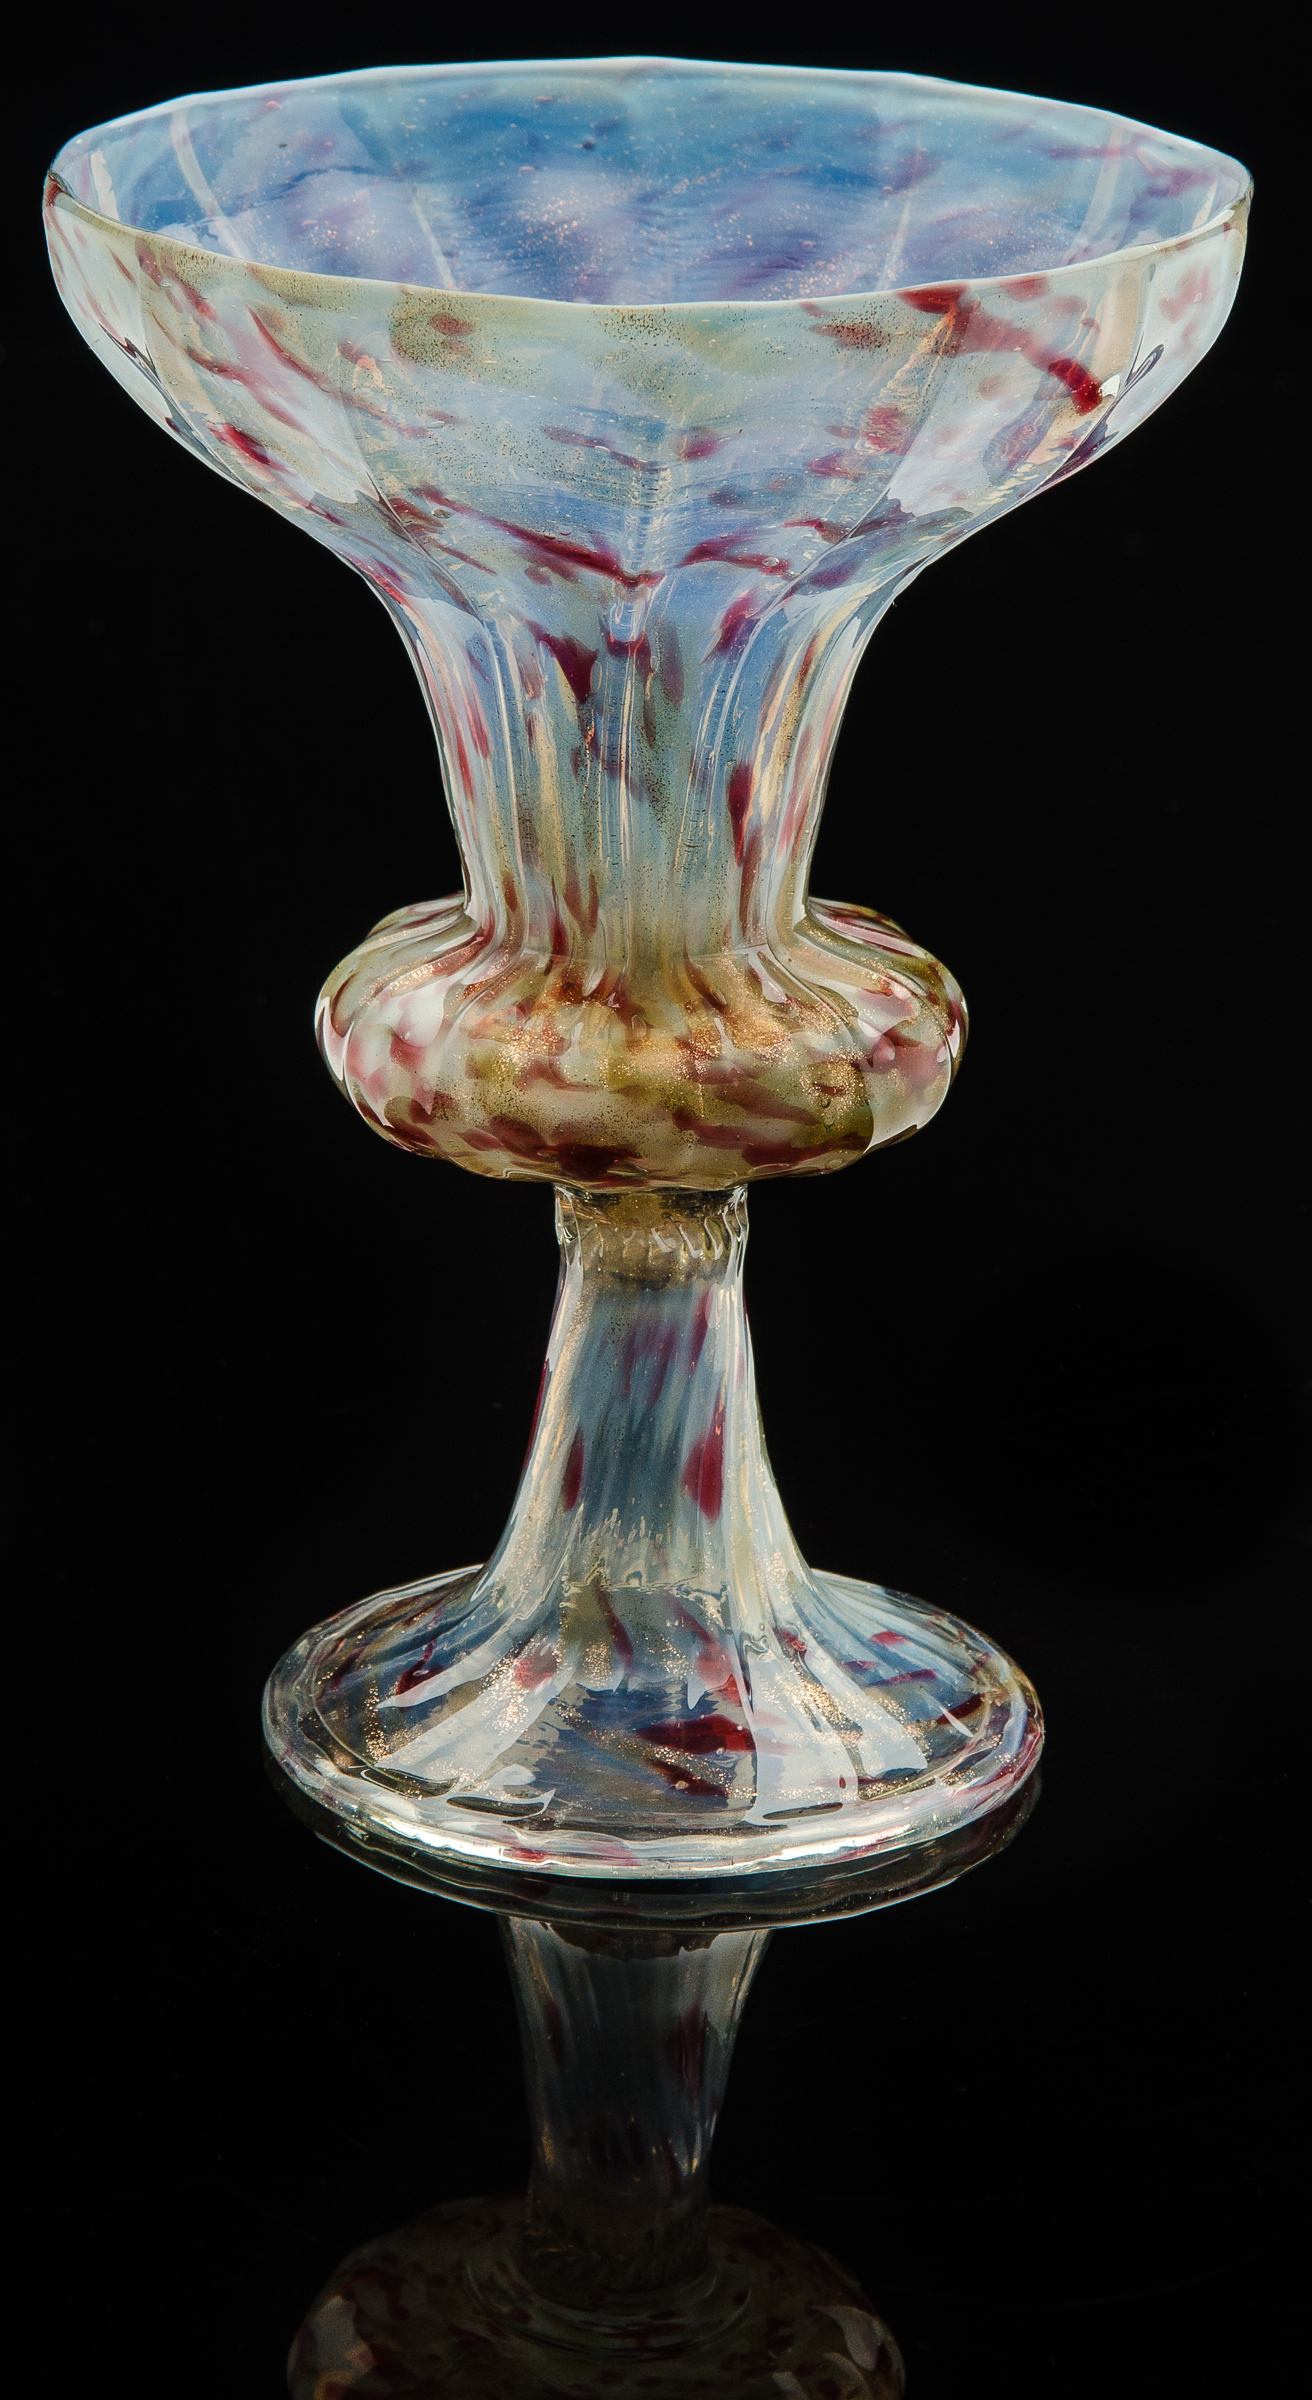  Societa Anonima per Salviati,  Opalescent Goblet with Ribbed Bowl  (1866, glass, 7 1/16 inches), VV.333 